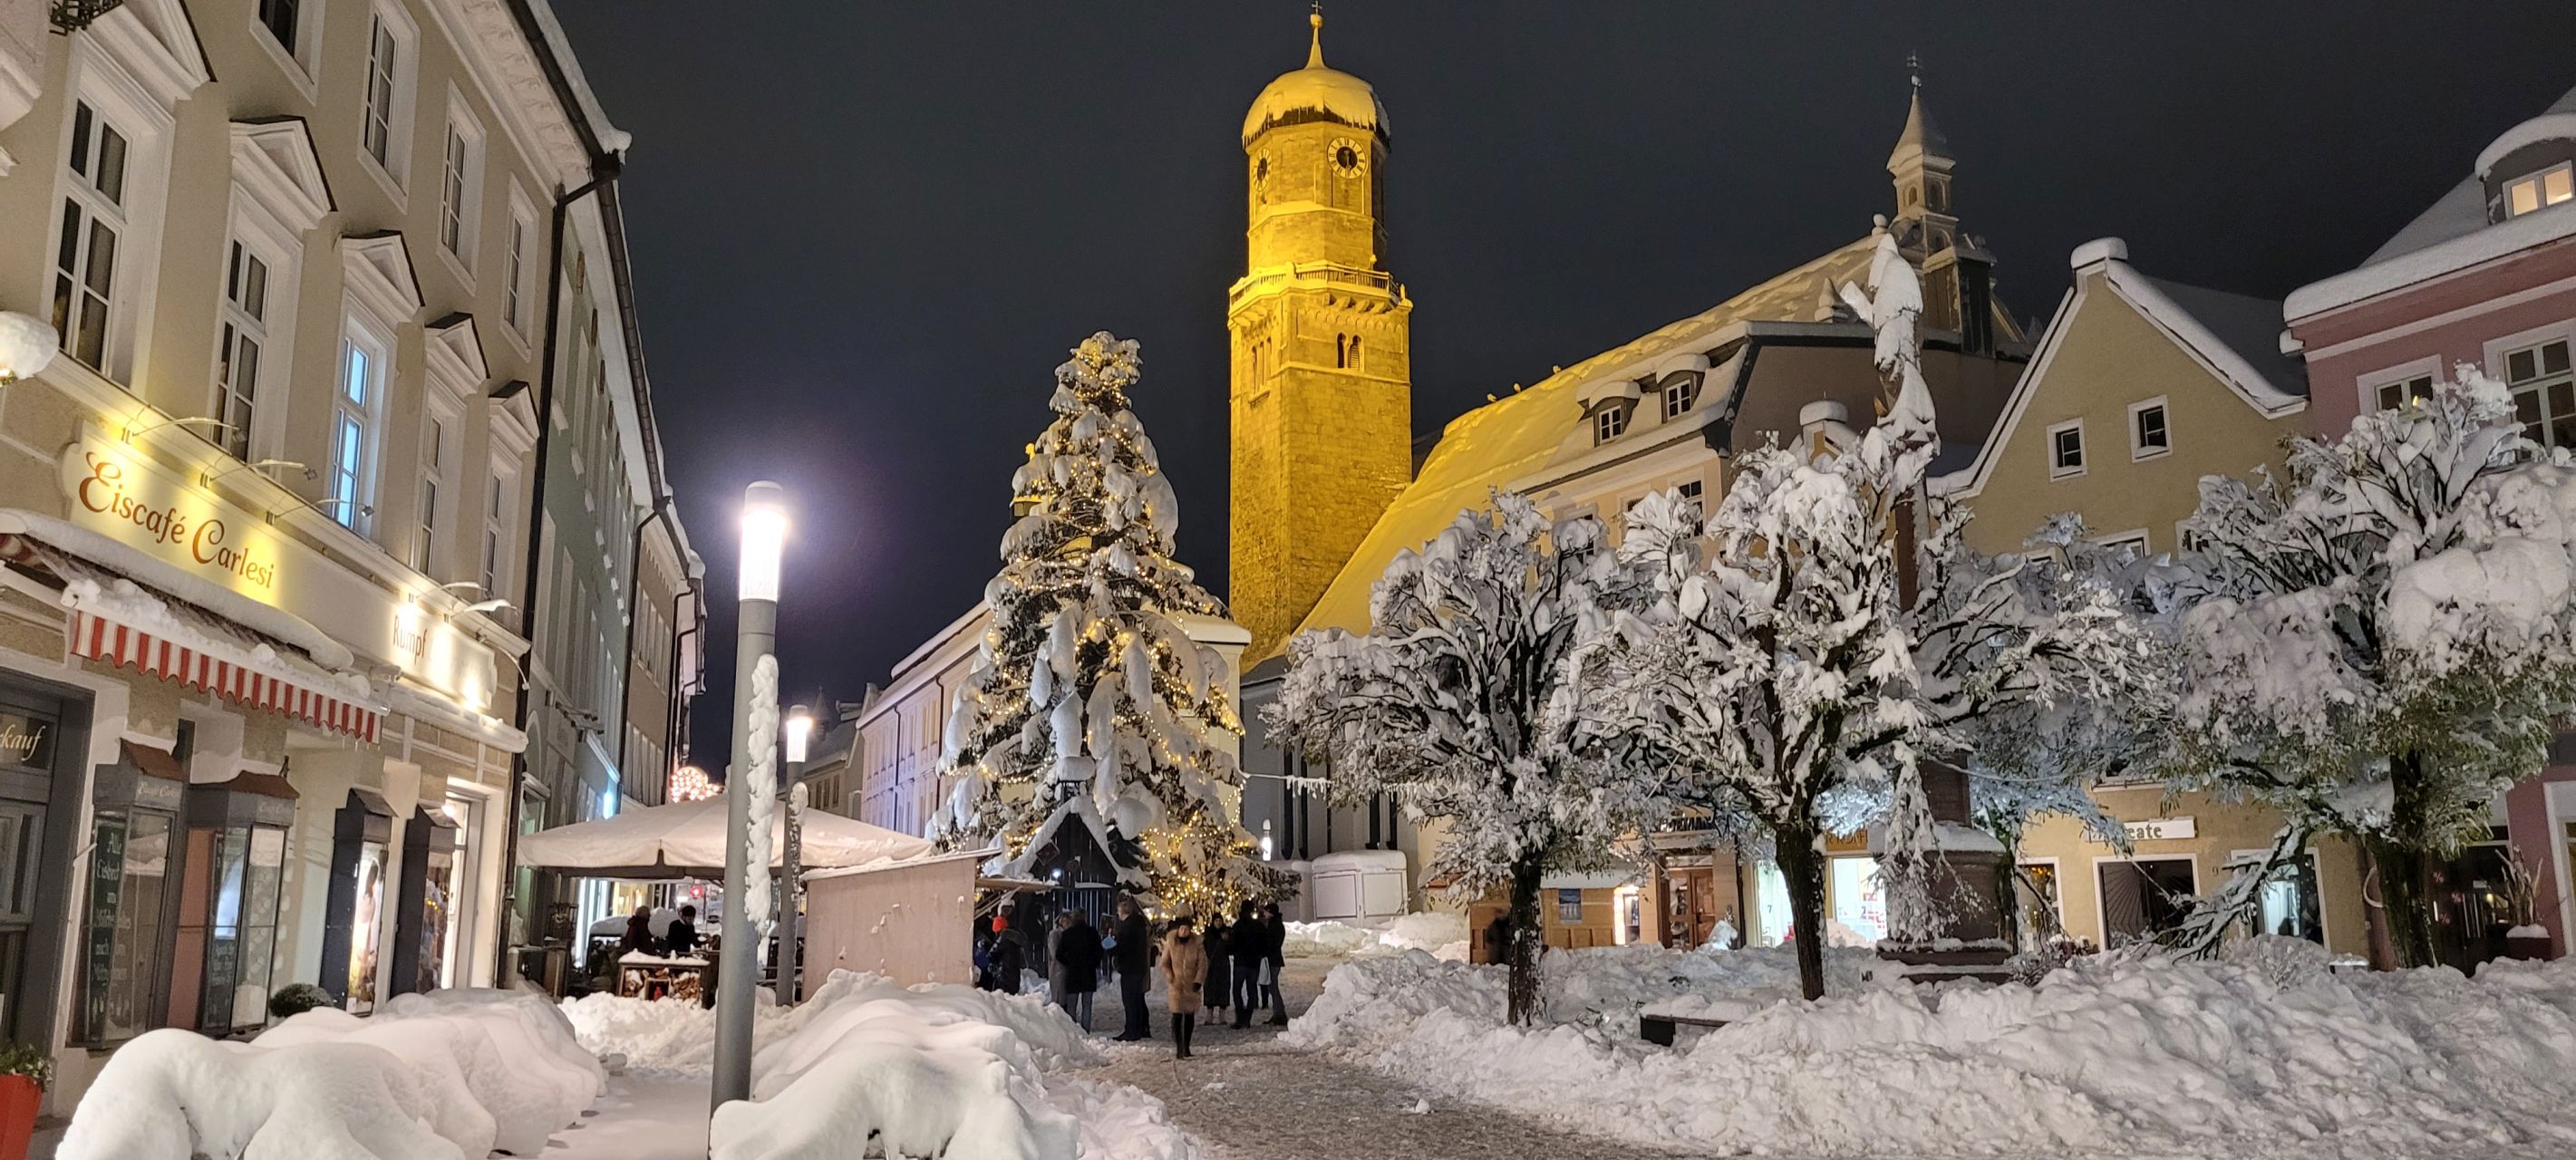 Weilheimer Marienplatz im Schnee (C) WurlitzMedia